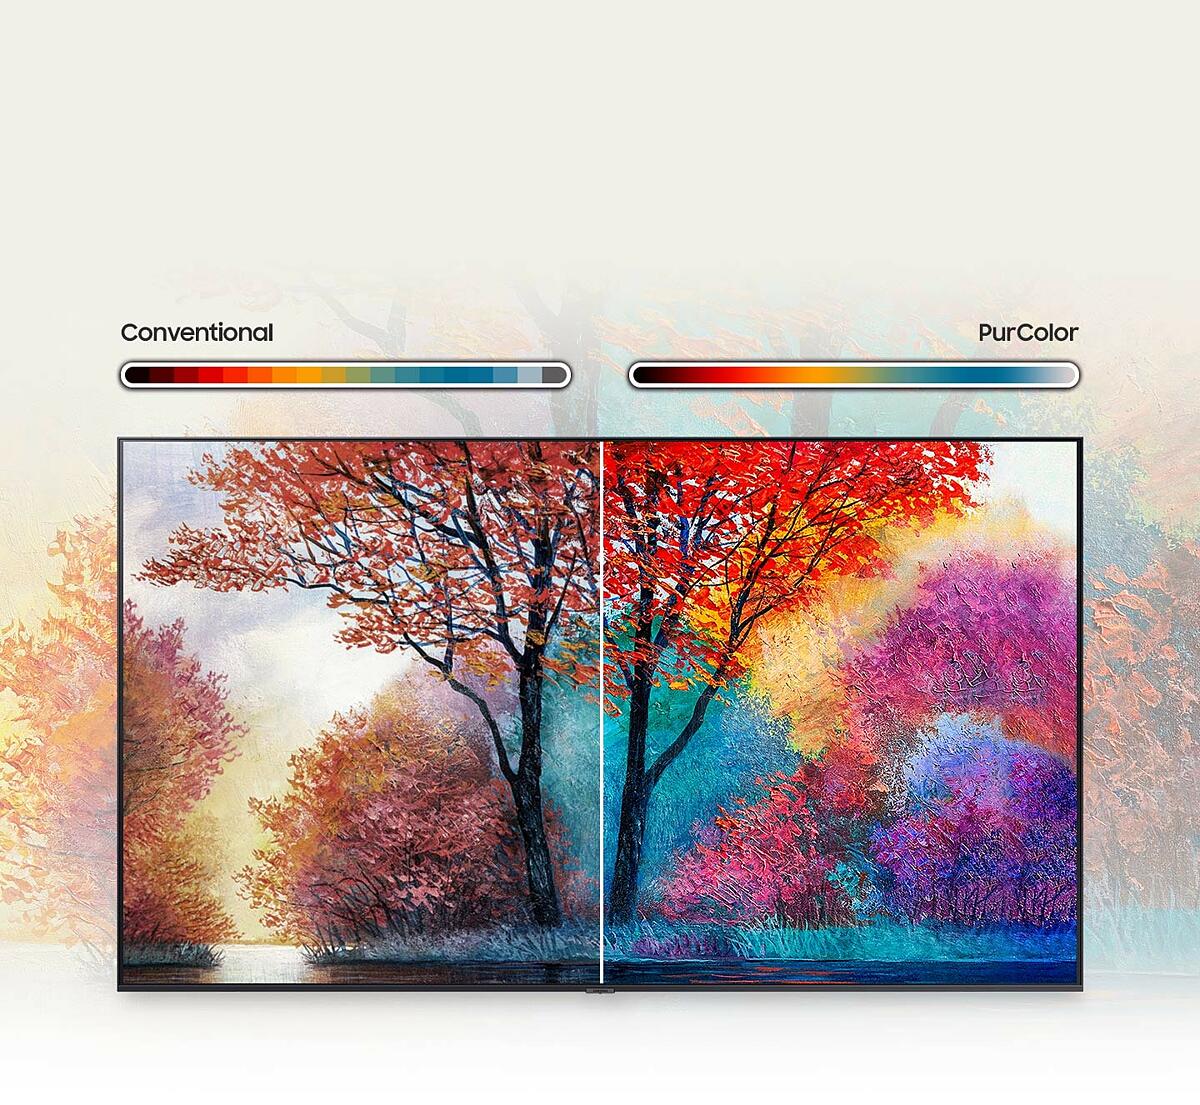 Samsung-91326052-za-feature-fine-tuned-color-for-a-vibrant--lifelike-picture-454348106--ORIGIN